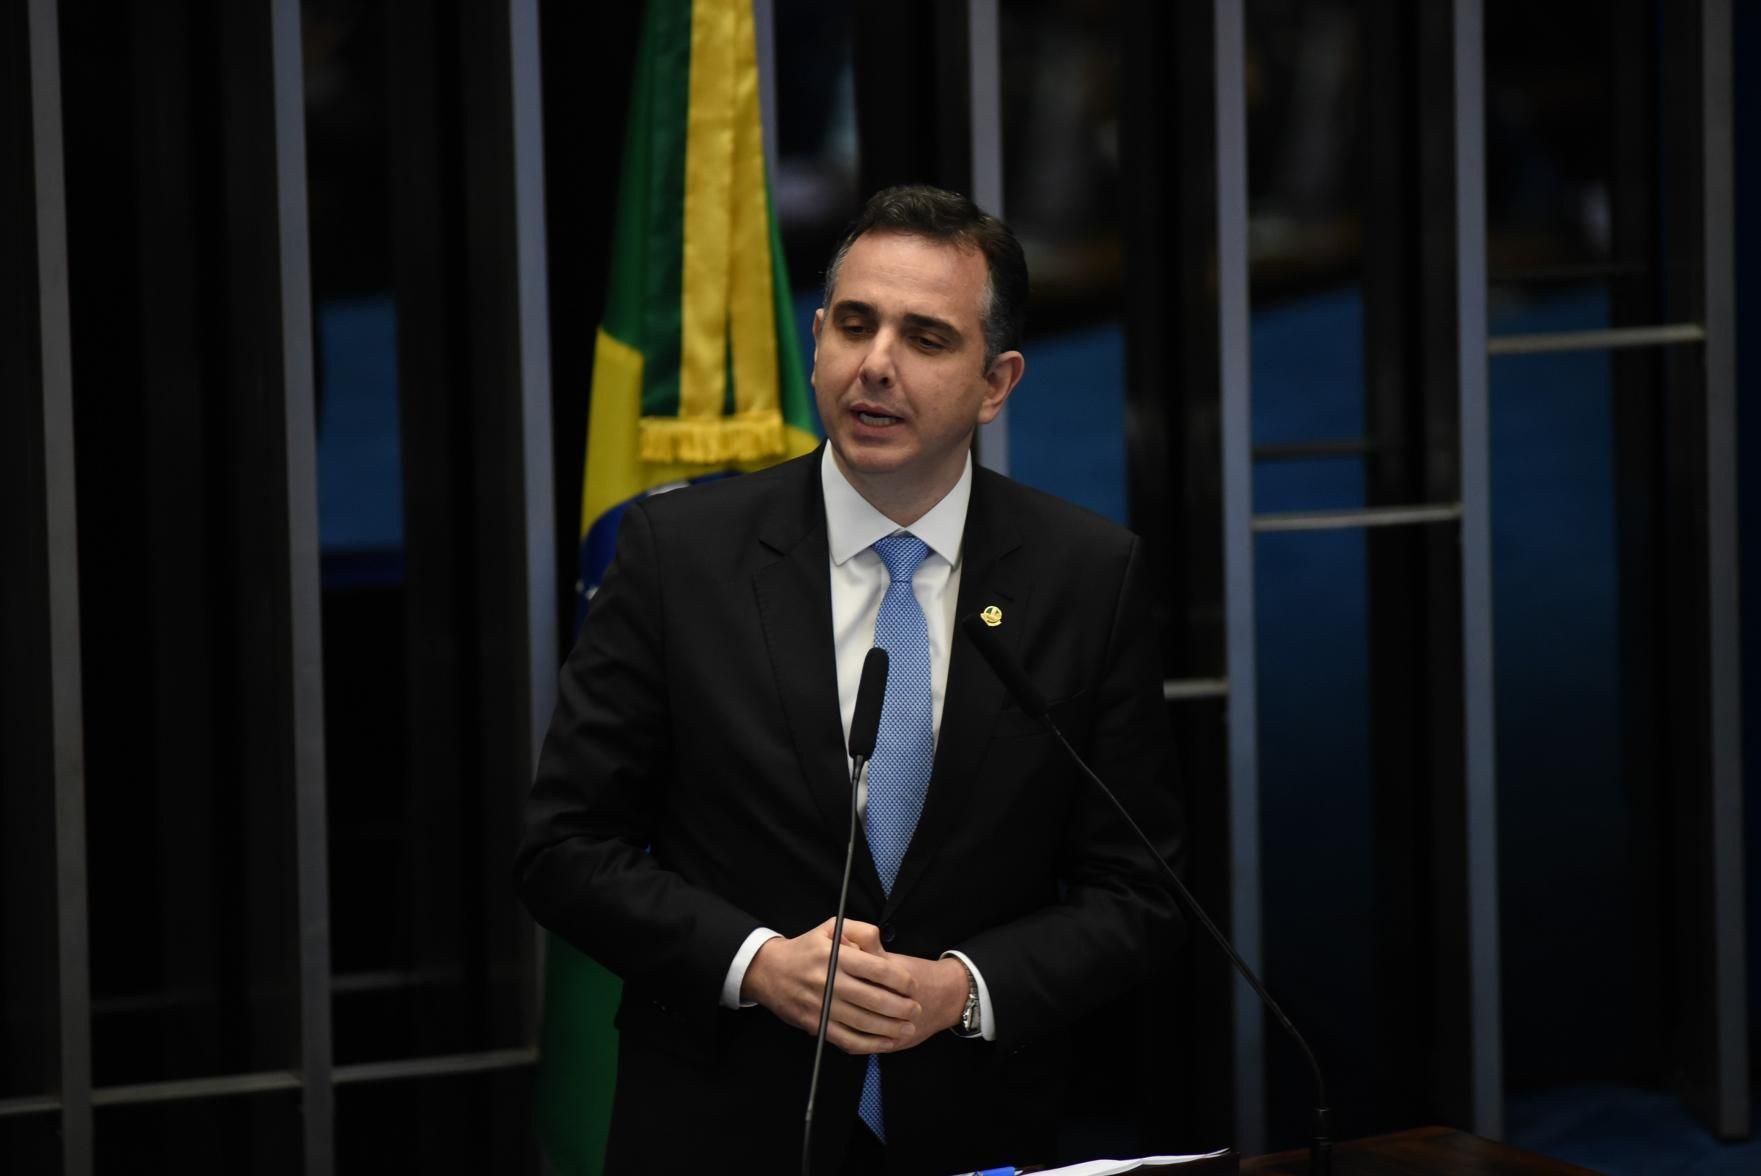 Eduardo critica gasolina a R$ 11,56 com texto da gestão Bolsonaro